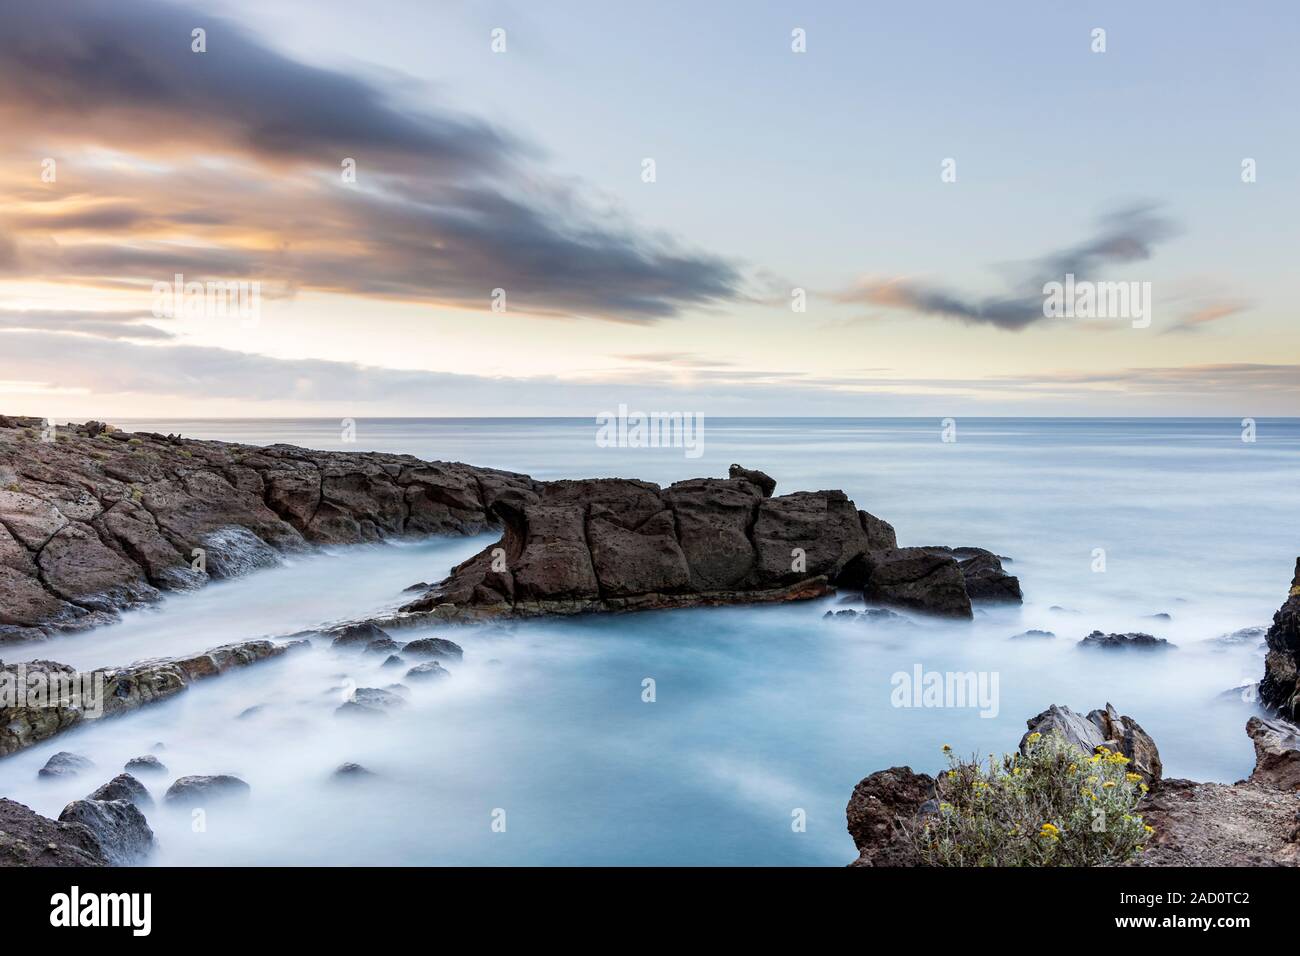 Fotografie con lunghi tempi di esposizione seascape all'alba, Playa Paraiso, Costa Adeje, Tenerife, Isole Canarie, Spagna Foto Stock